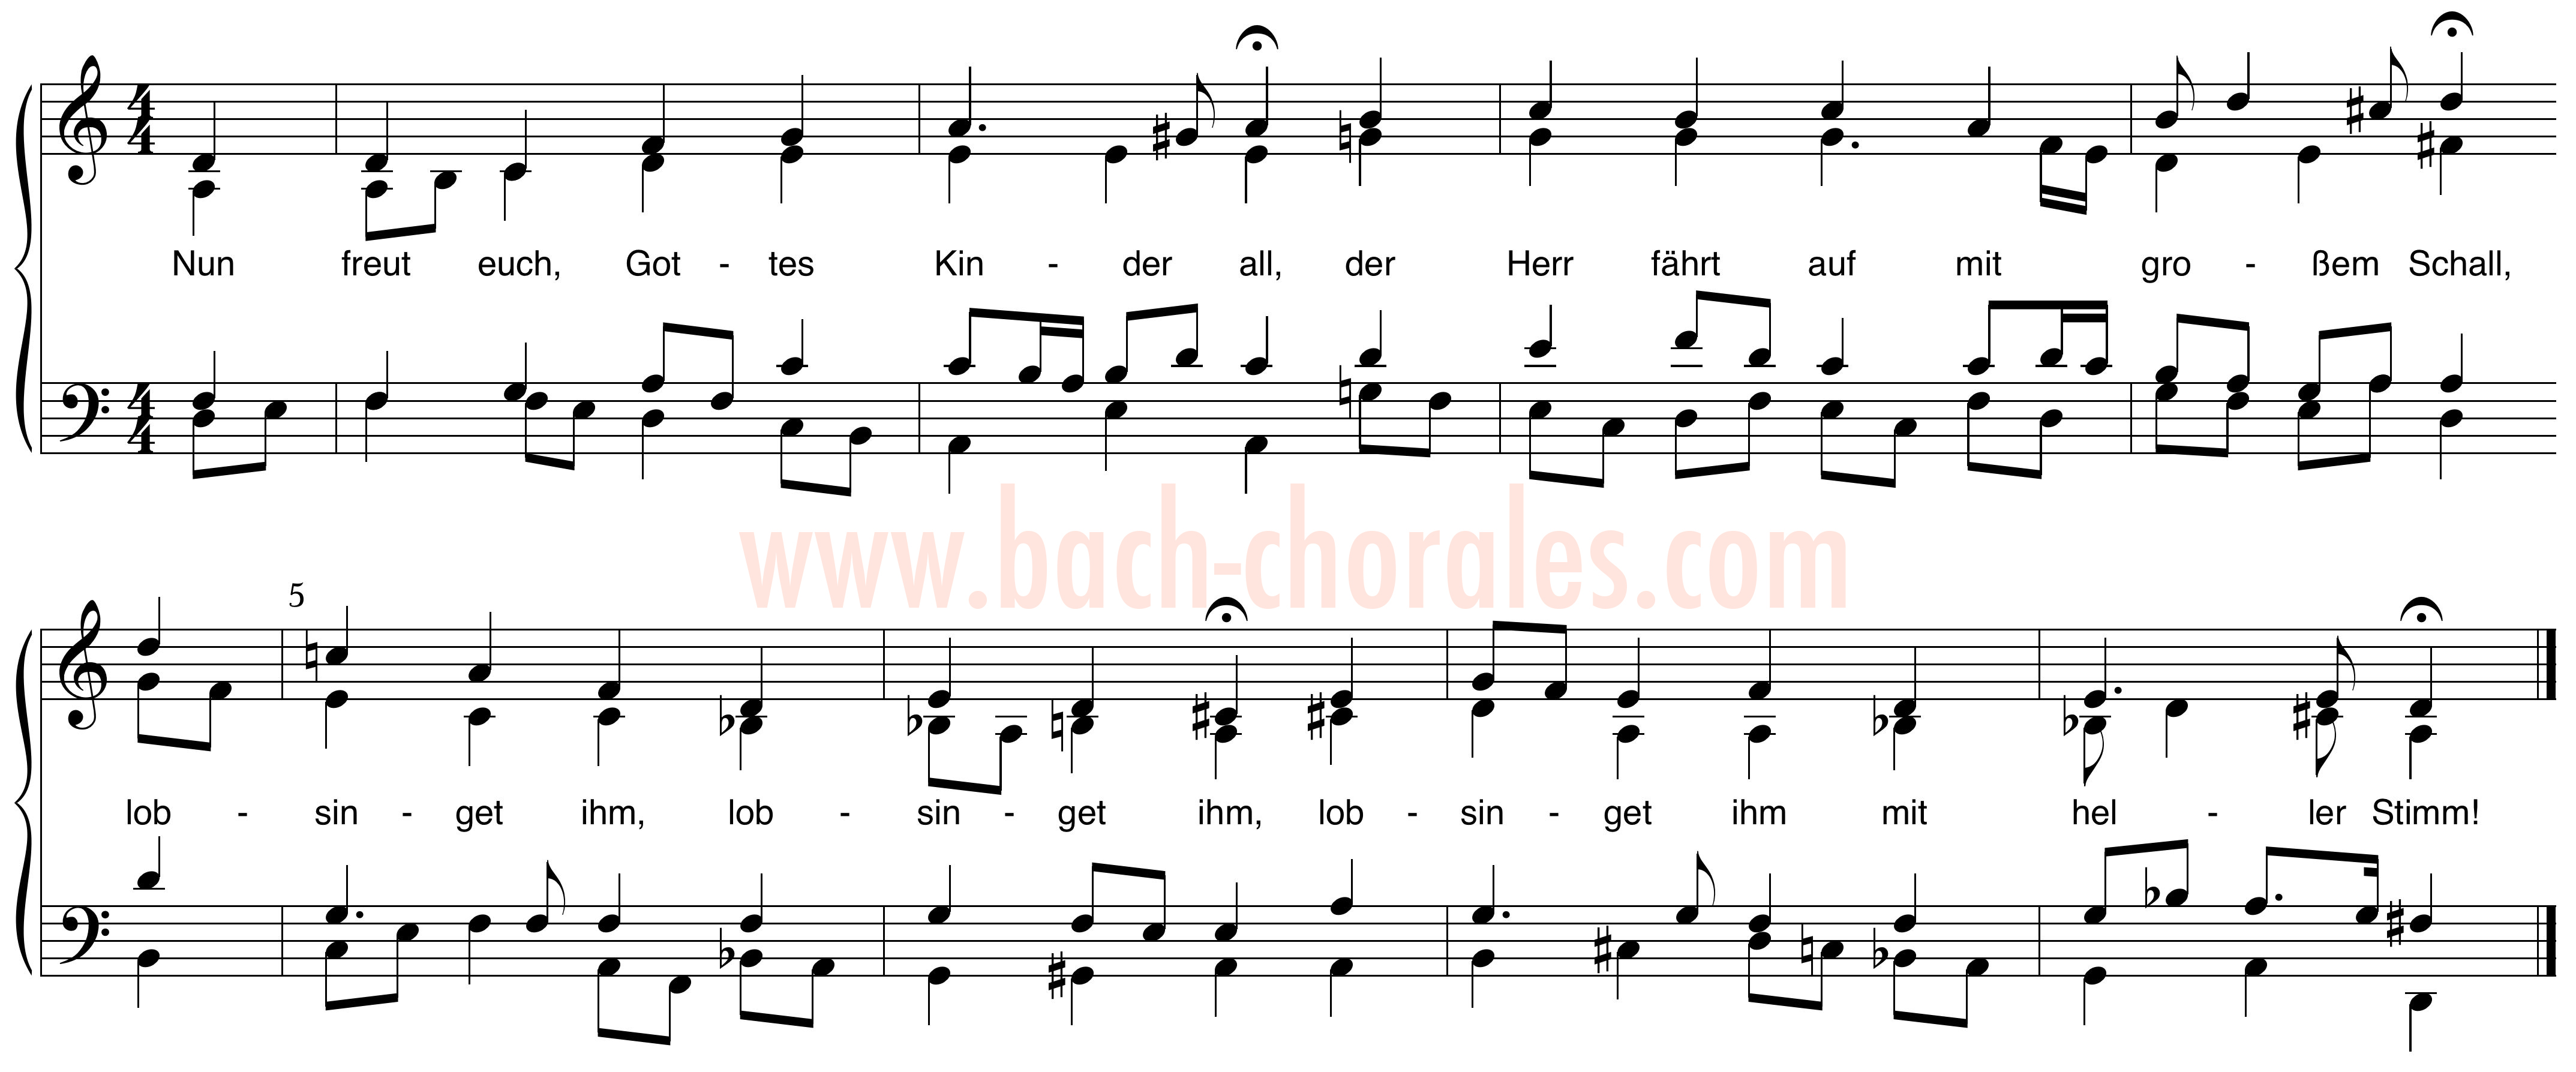 notenbeeld BWV 387 op https://www.bach-chorales.com/